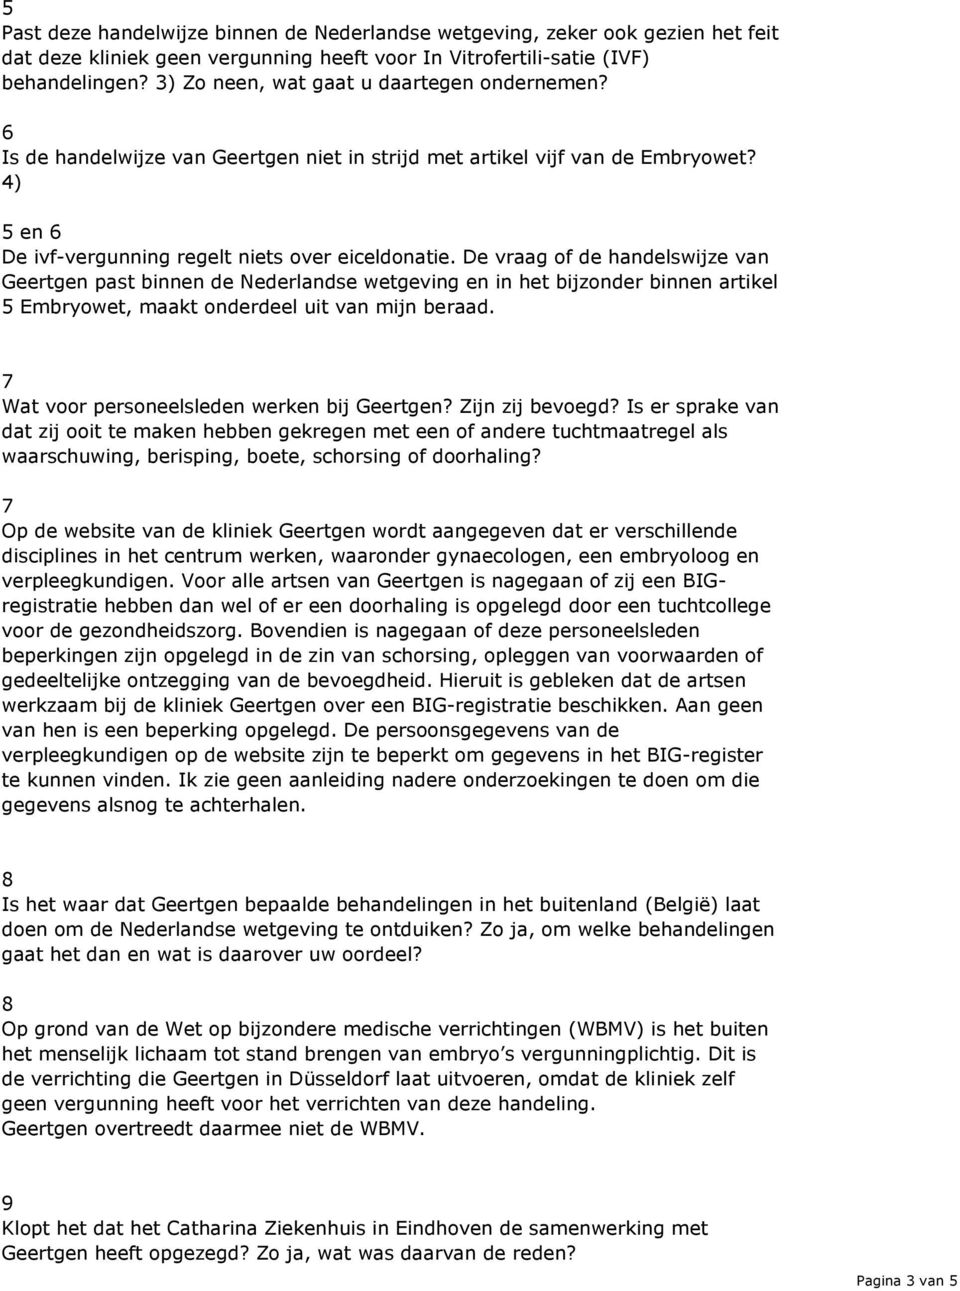 De vraag of de handelswijze van Geertgen past binnen de Nederlandse wetgeving en in het bijzonder binnen artikel 5 Embryowet, maakt onderdeel uit van mijn beraad.